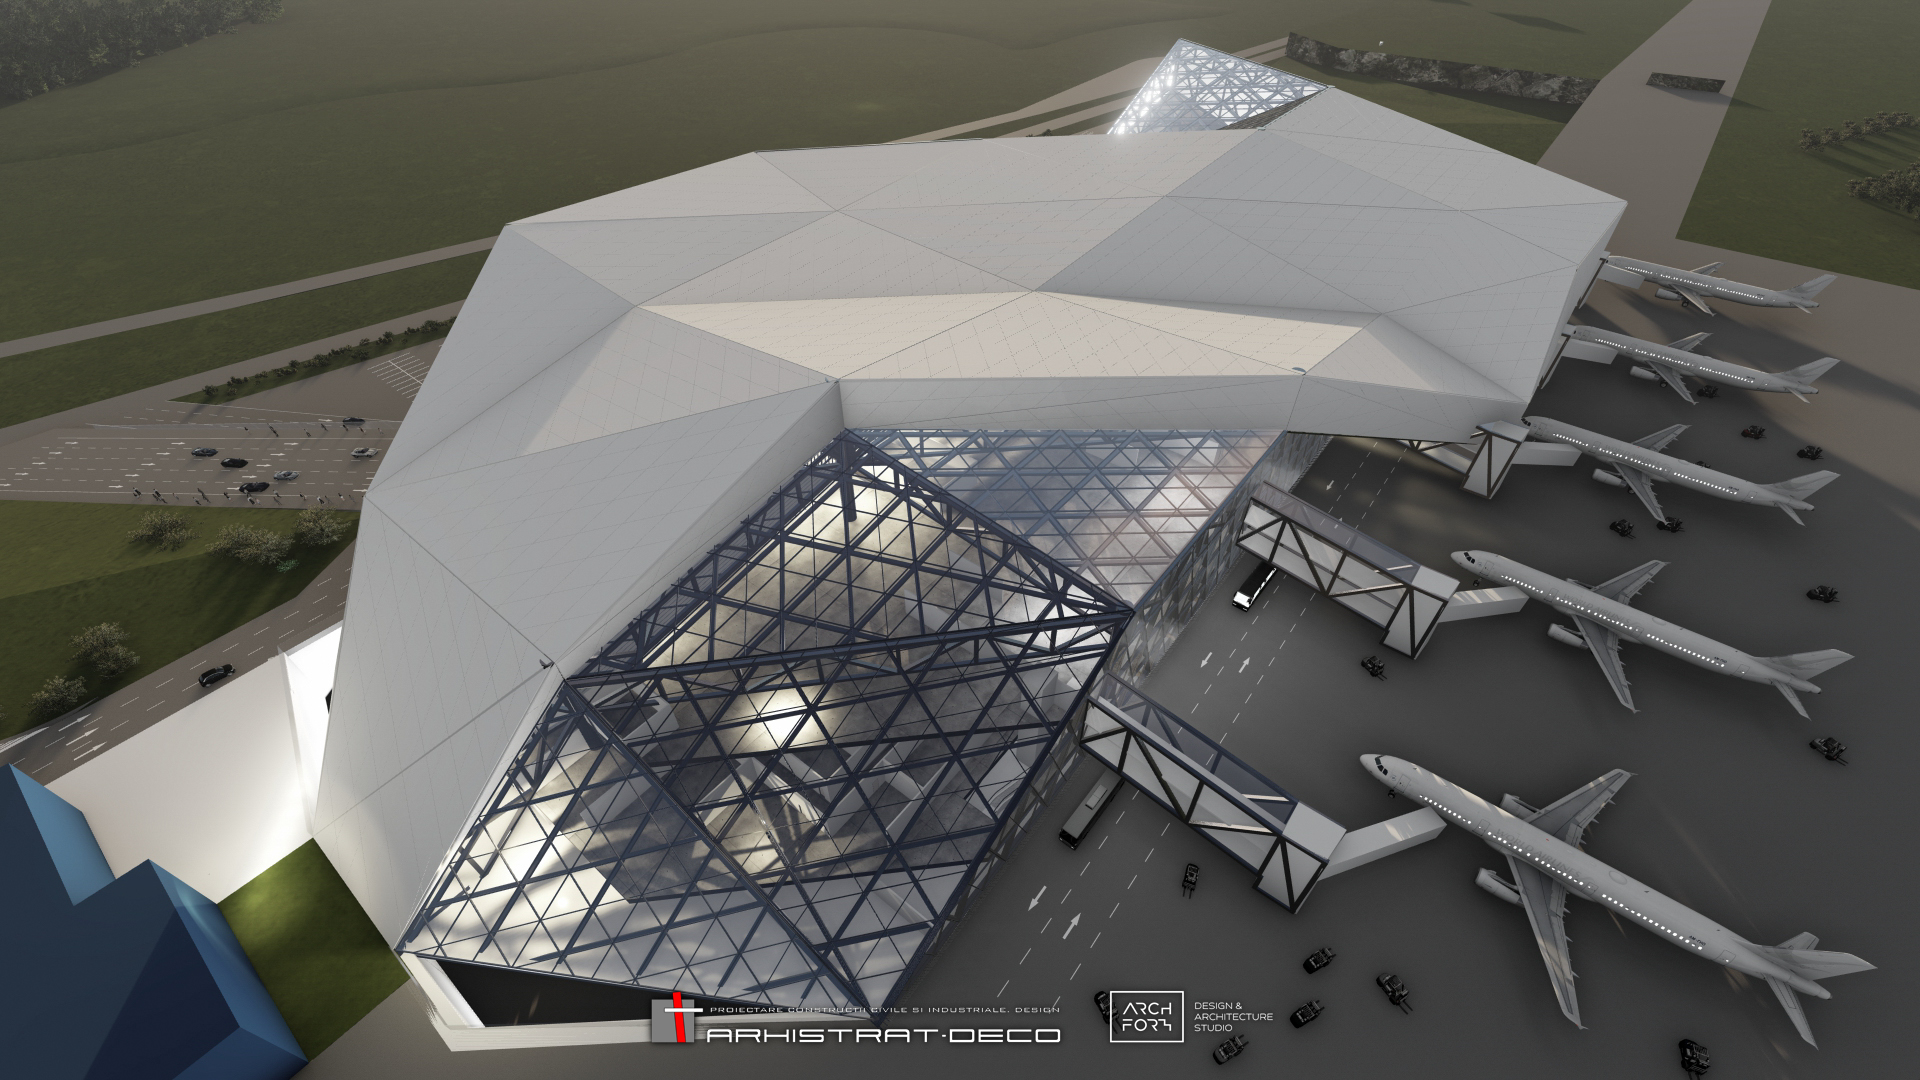 AVIA INVEST începe construcția celui mai mare terminal de pasageri din regiune